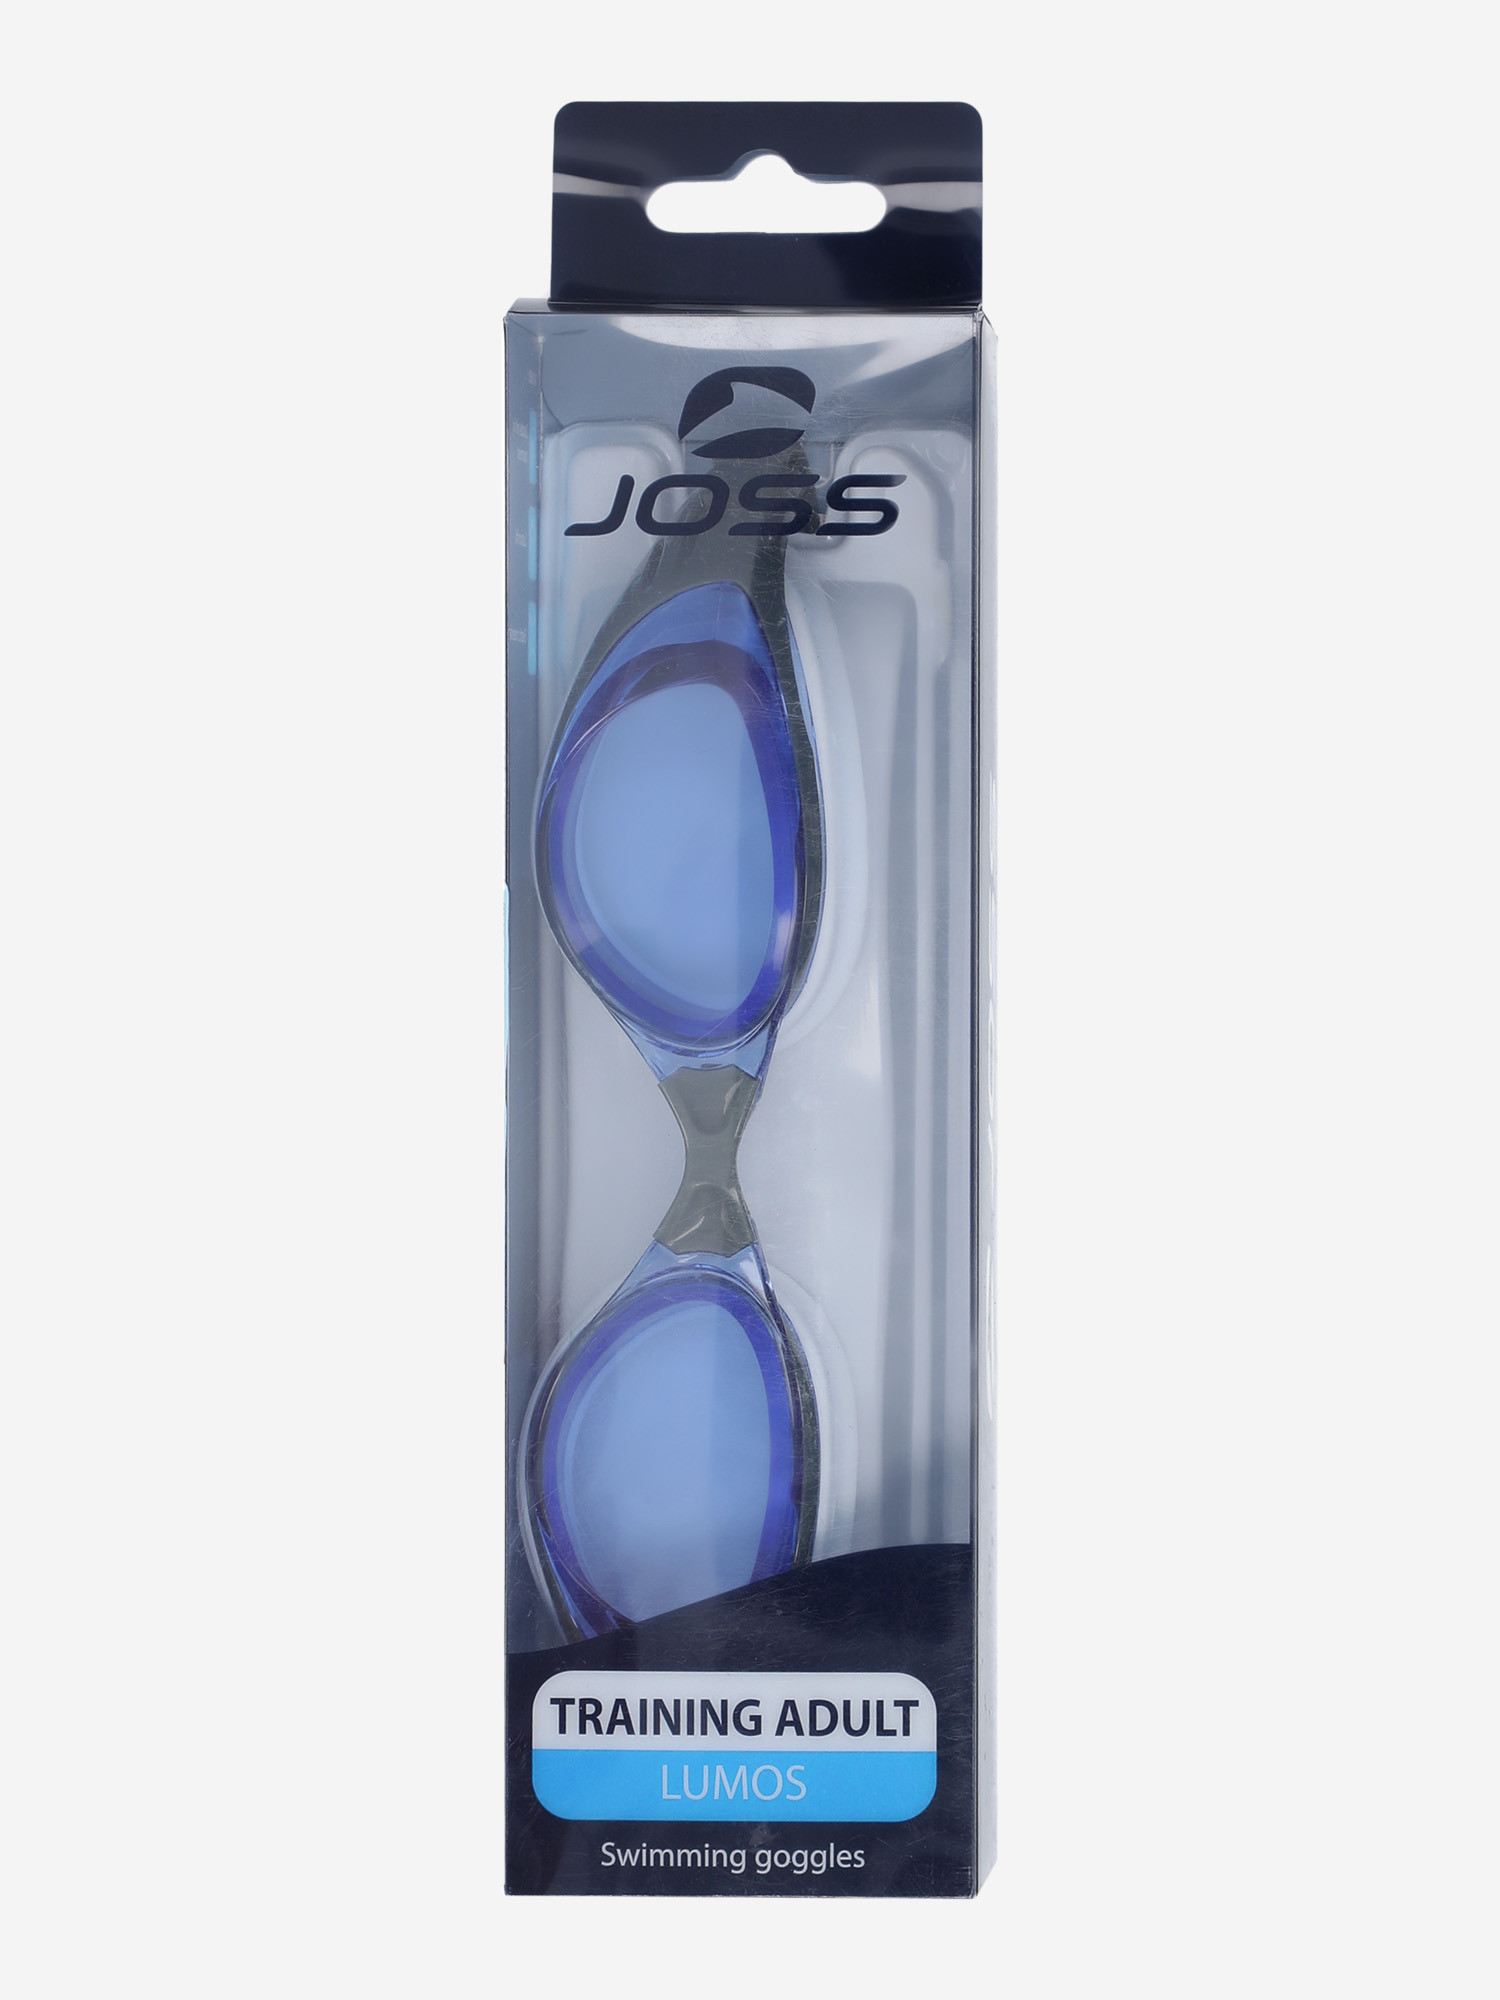 Окуляри для плавання Joss